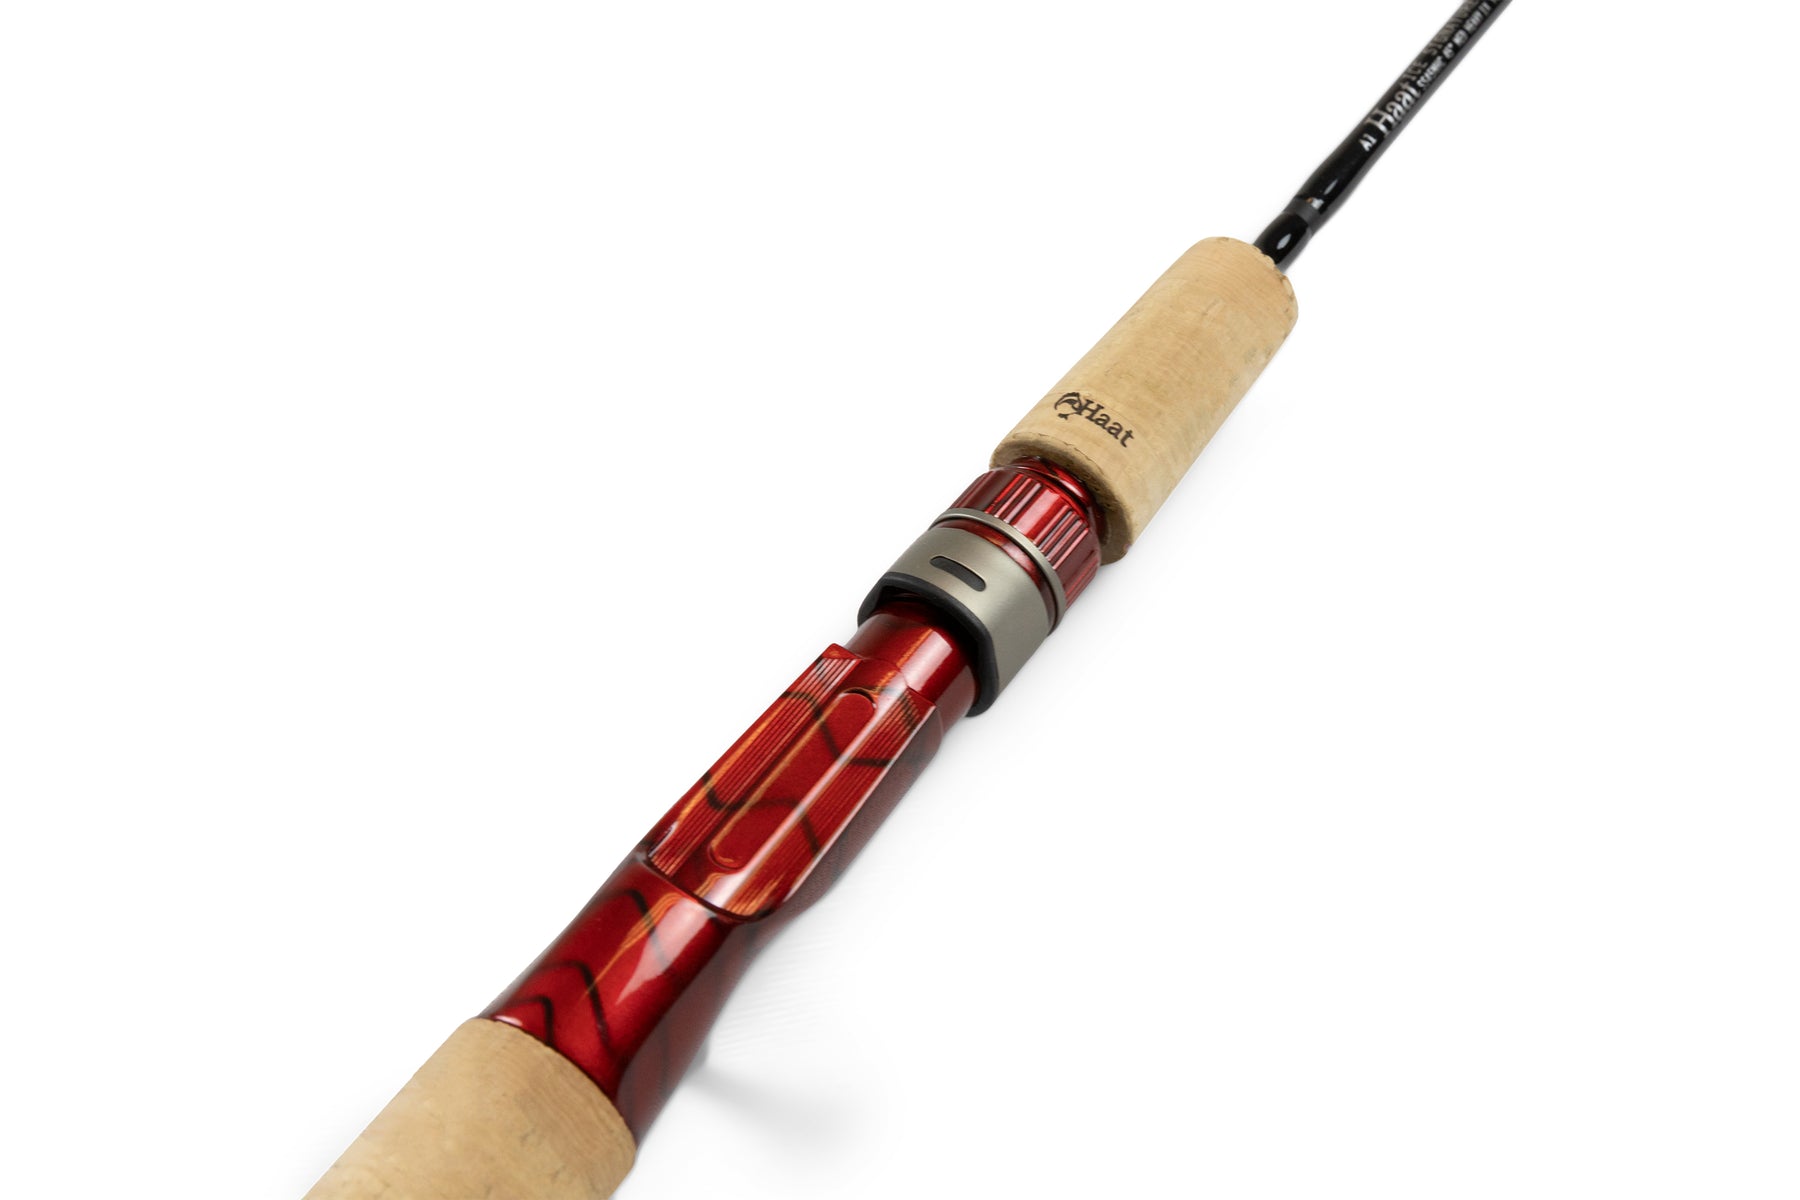 45 Extra-Heavy Casting Ice Fishing Rod